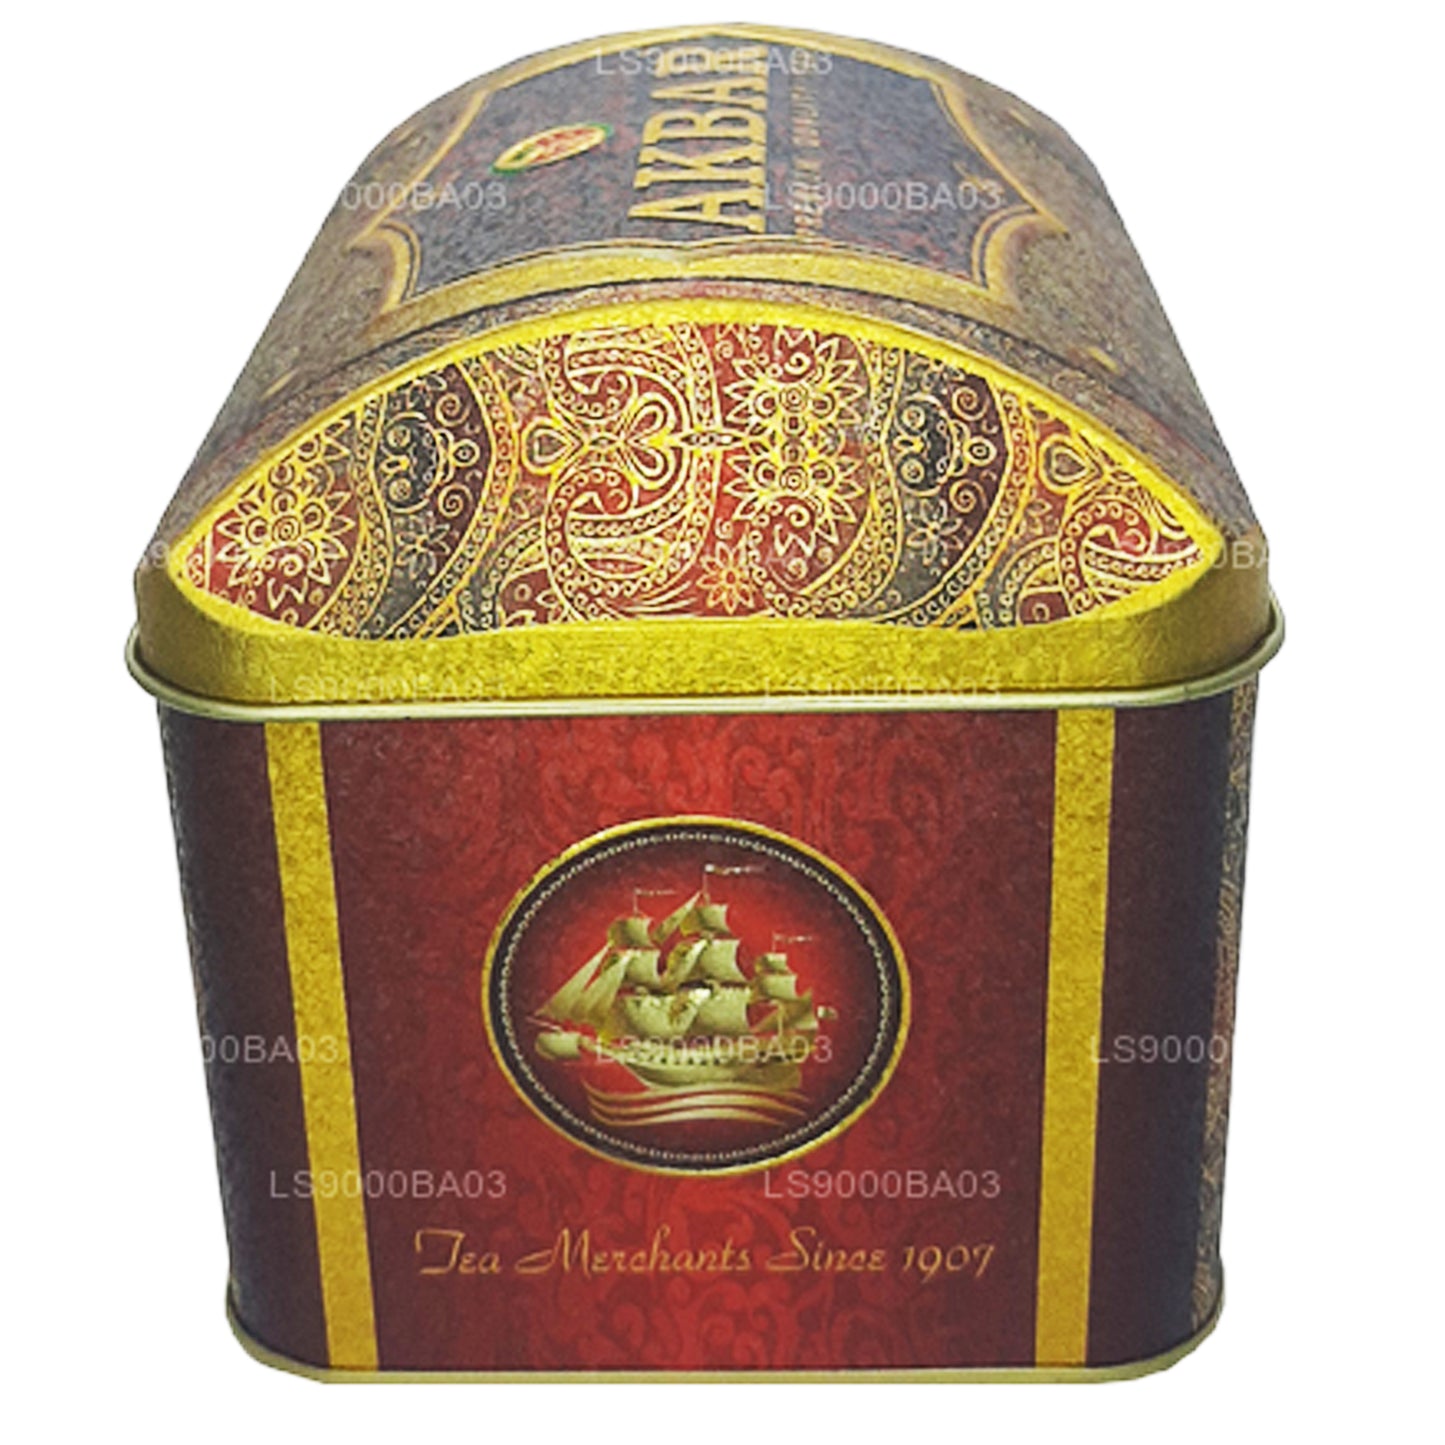 Akbar eksklusive samling jordbær creme Treasure Box (250g)